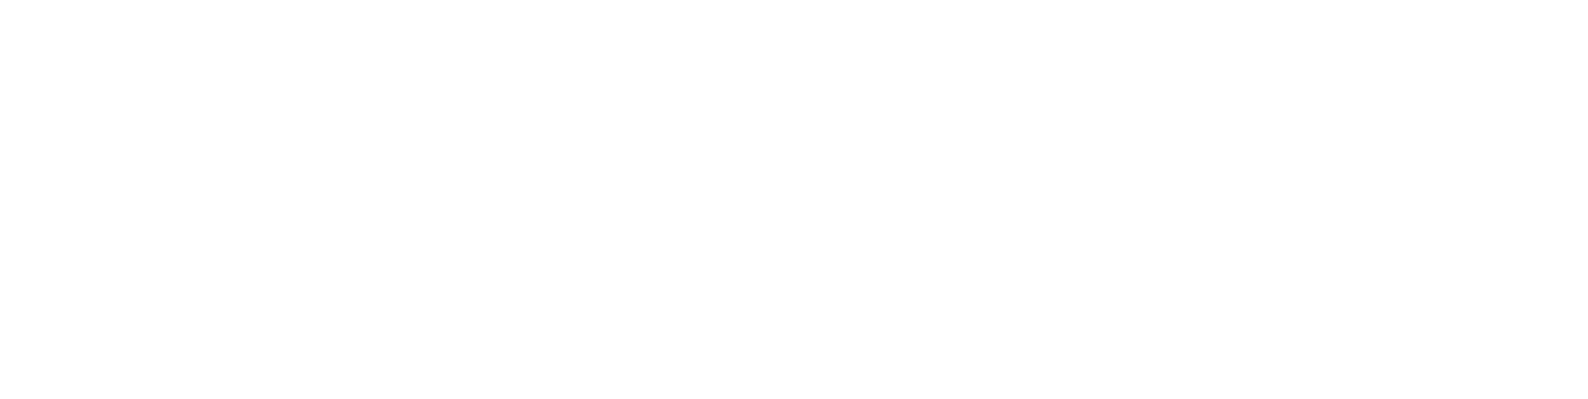 2018 Best Premium Cruise Linein Europe